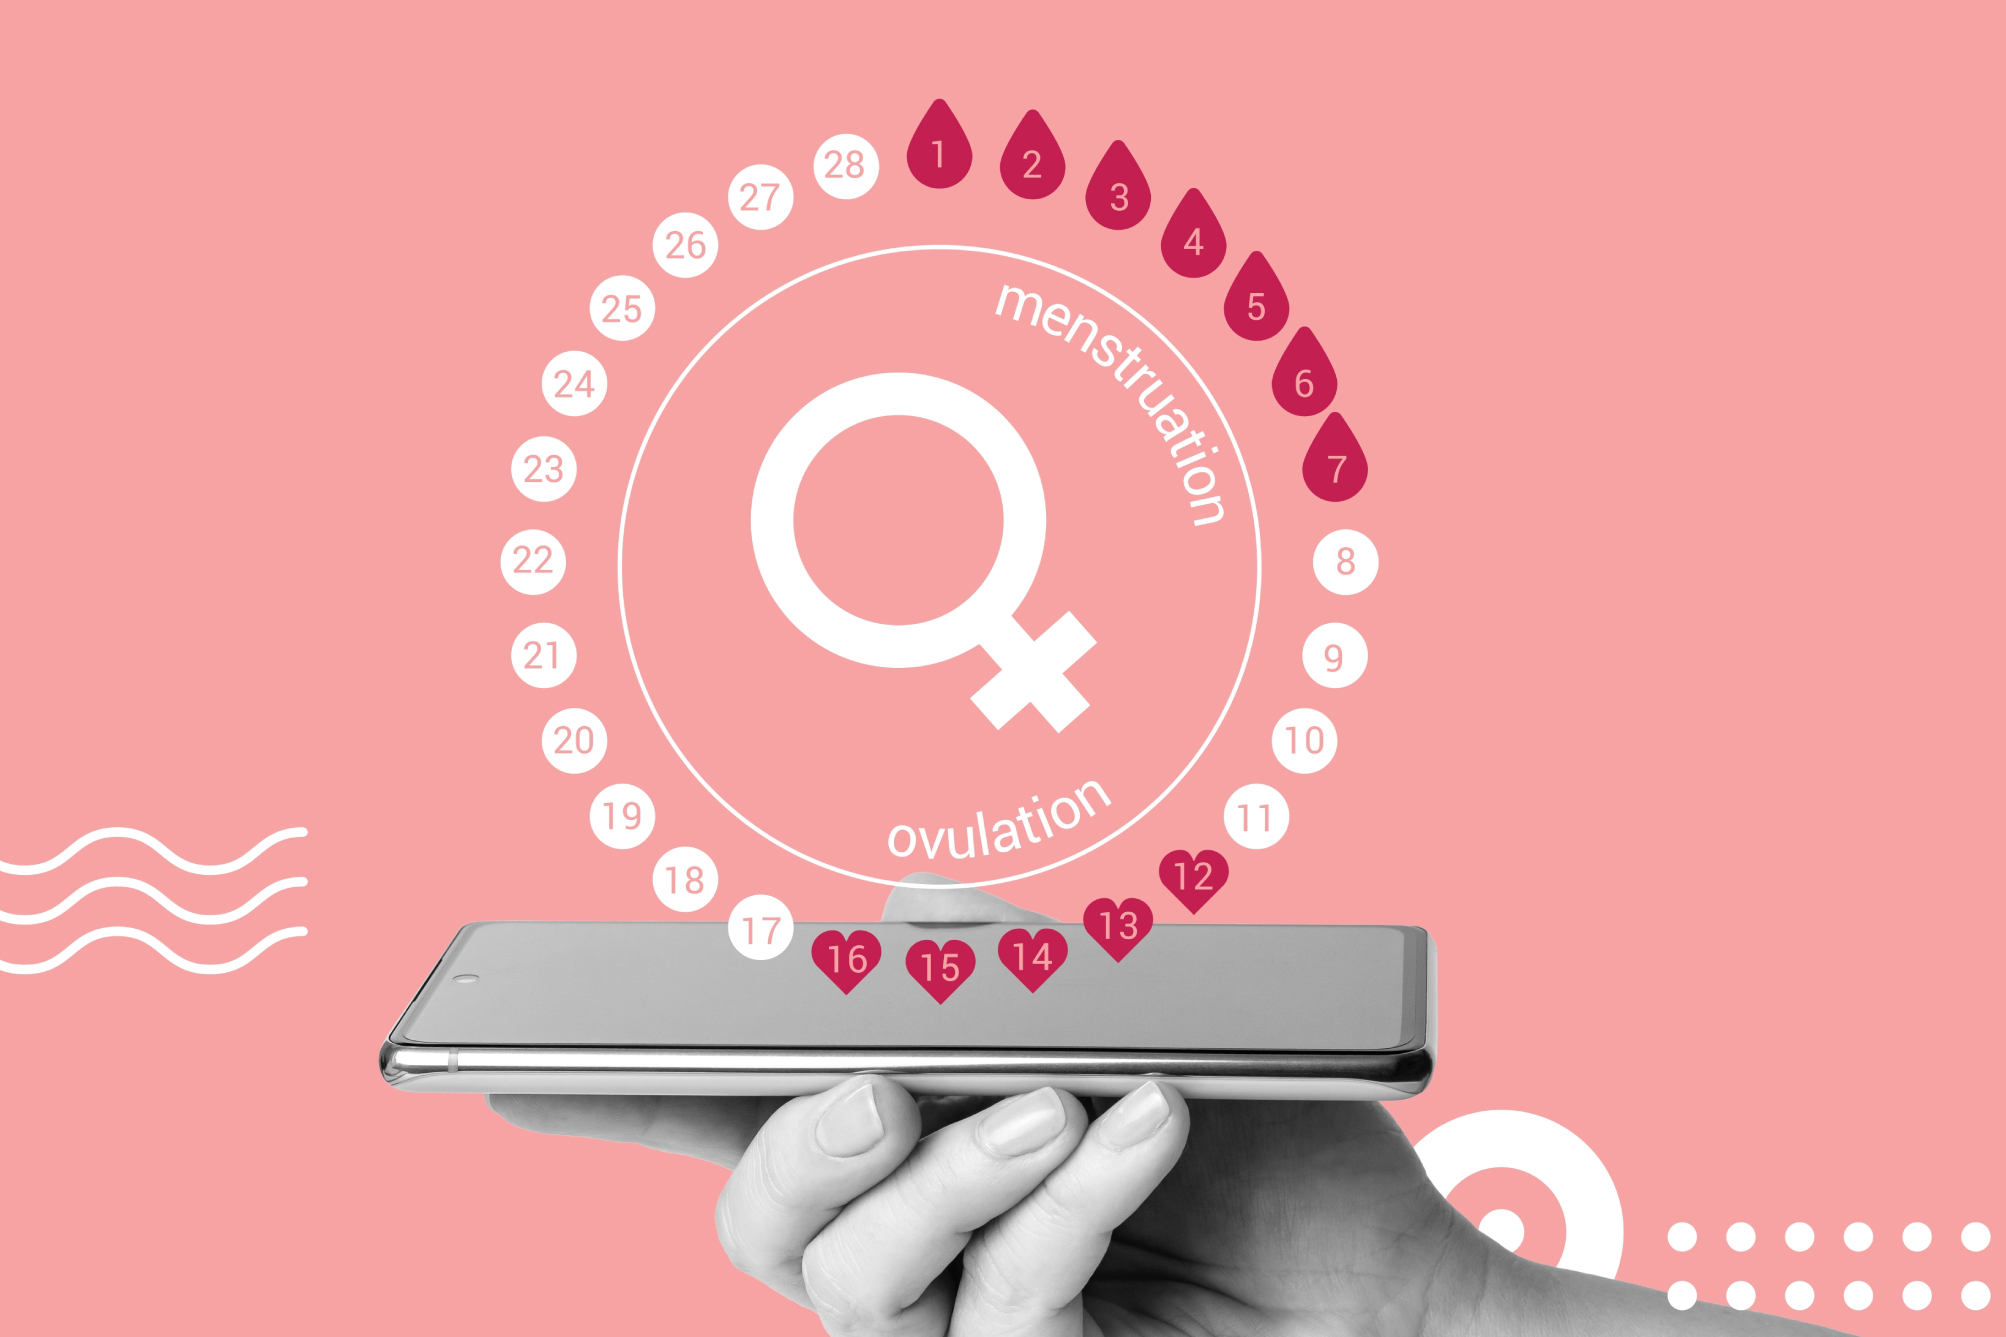 L'app de suivi menstruel Glow a exposé les données de 25 millions de personnes